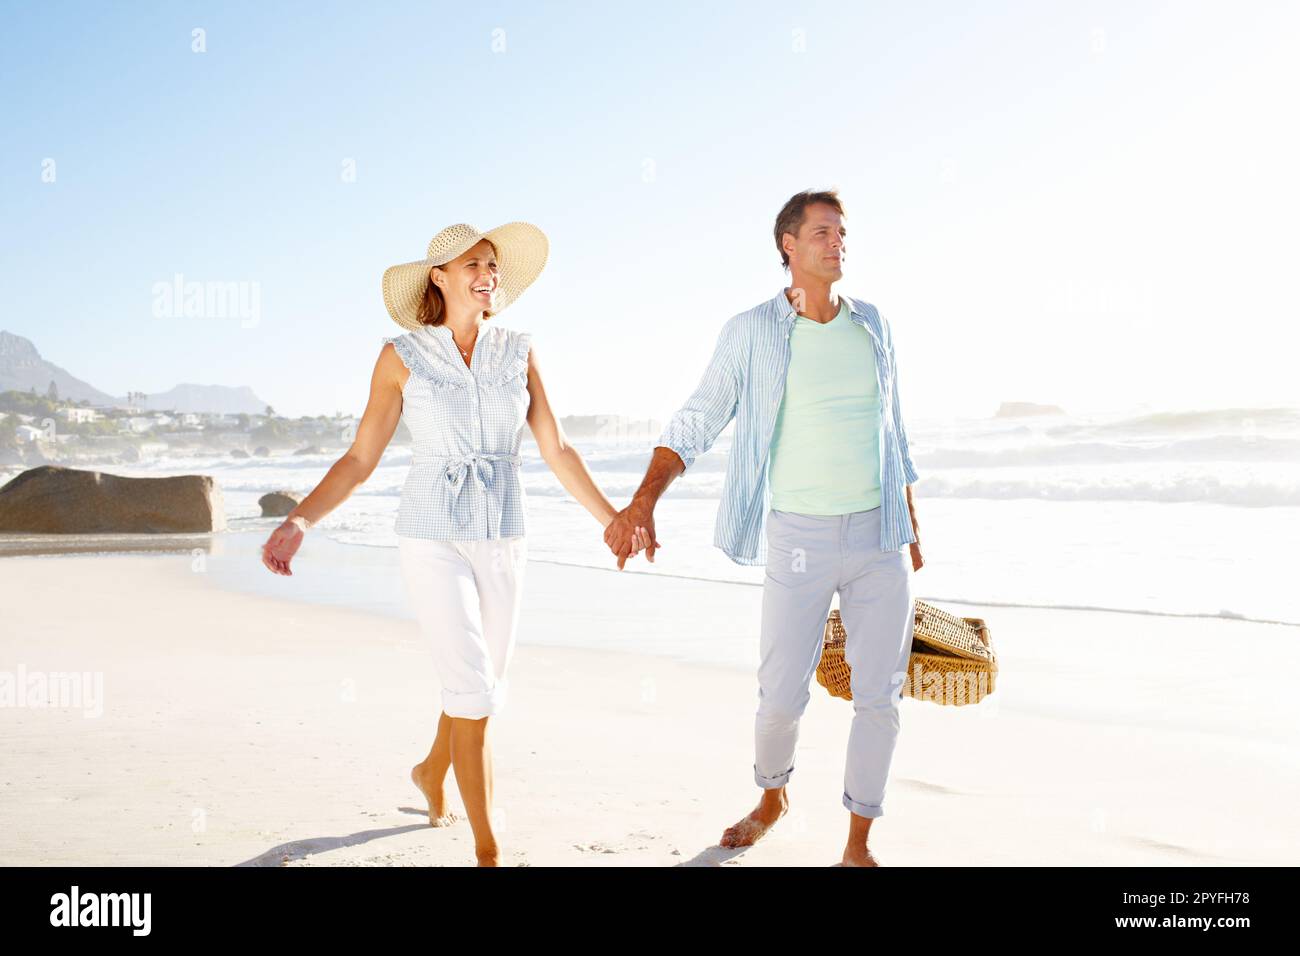 Mano in mano lungo la spiaggia. Una coppia beata che si gode una bella giornata in spiaggia insieme. Foto Stock